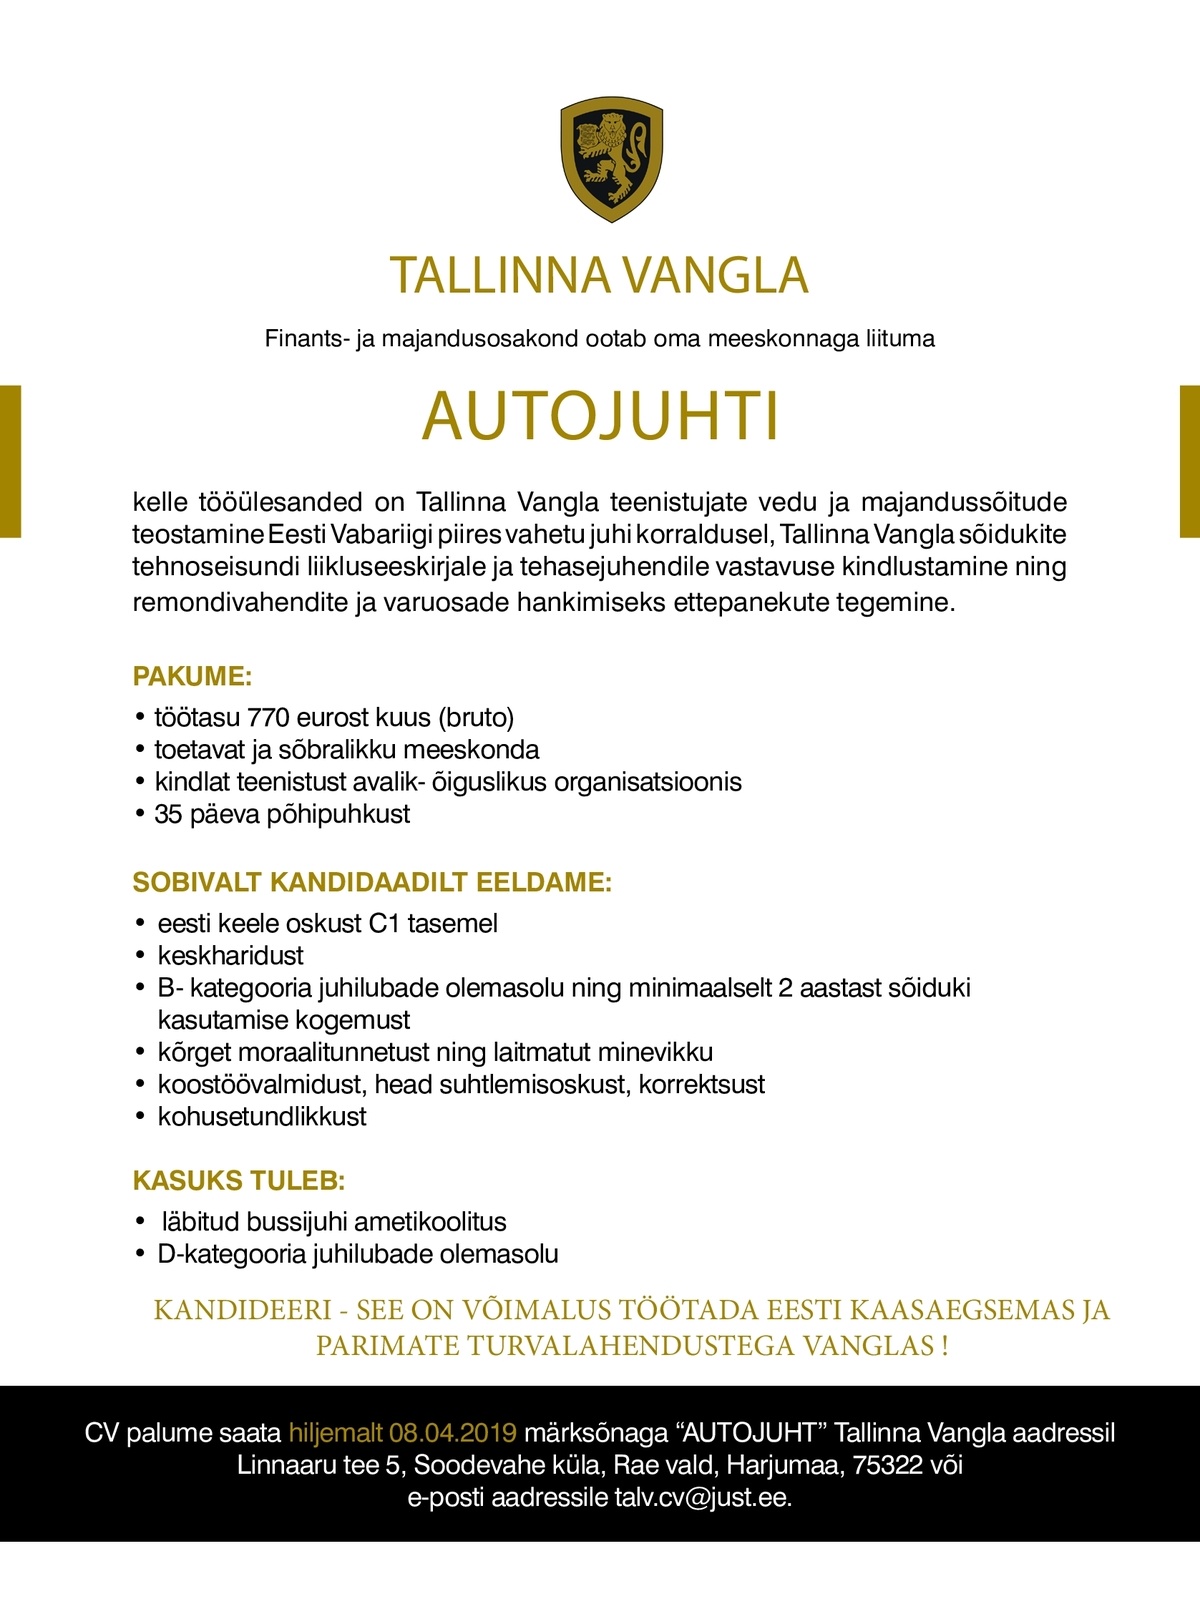 Tallinna Vangla Autojuht